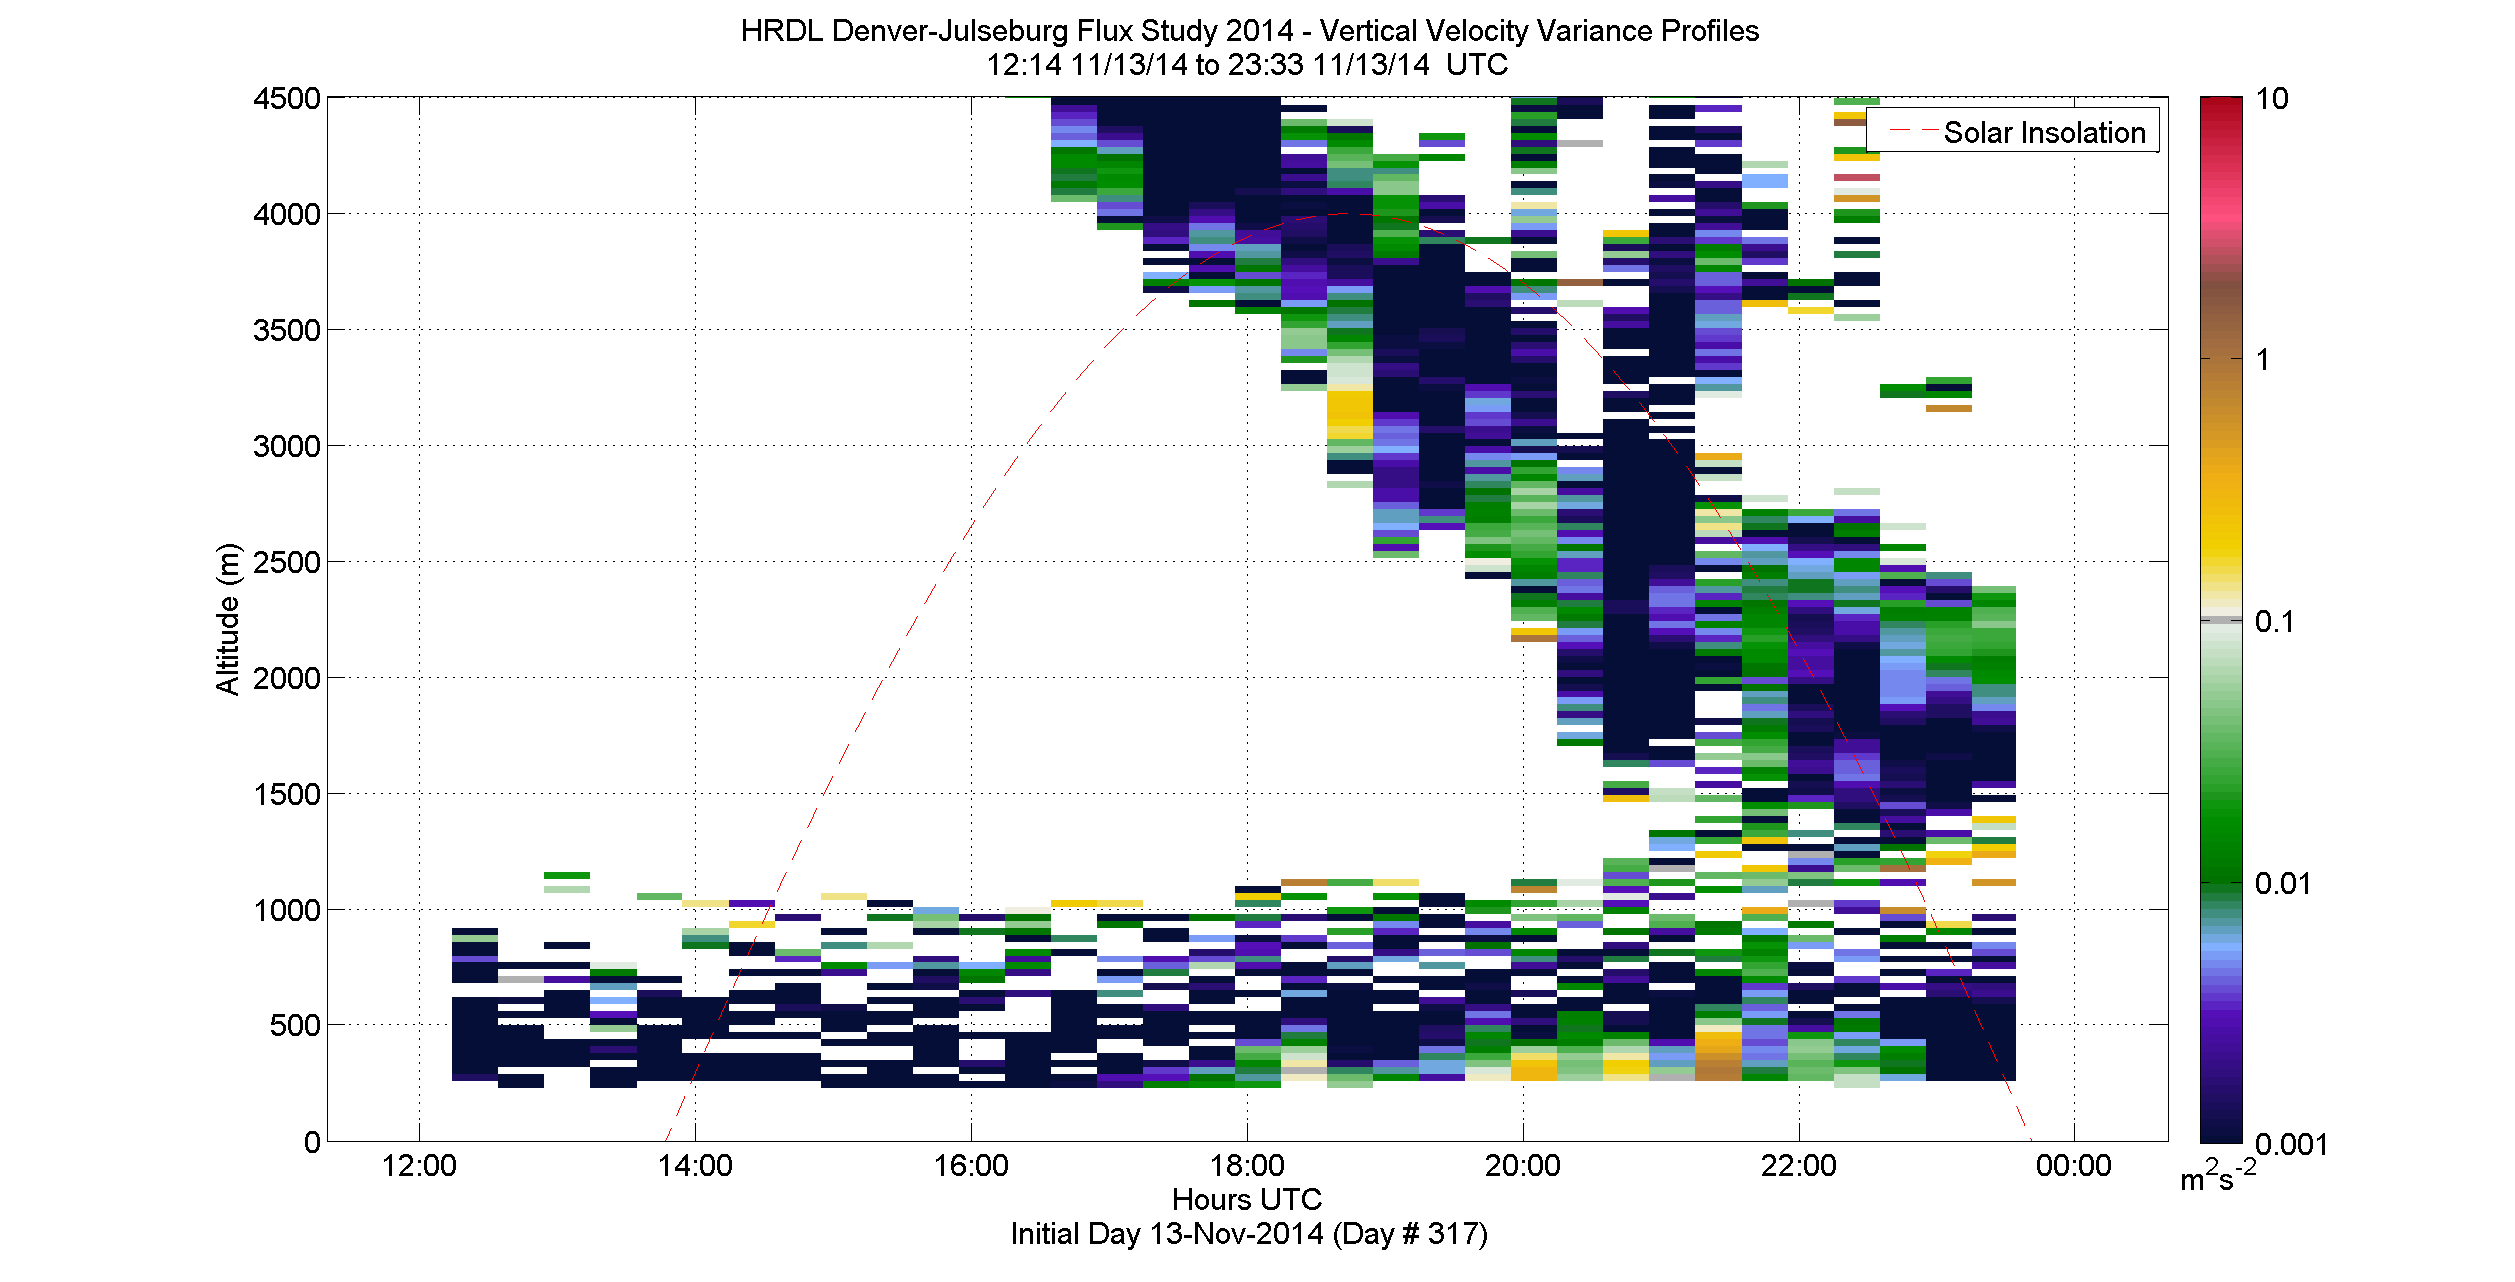 HRDL vertical variance profile - November 13 pm